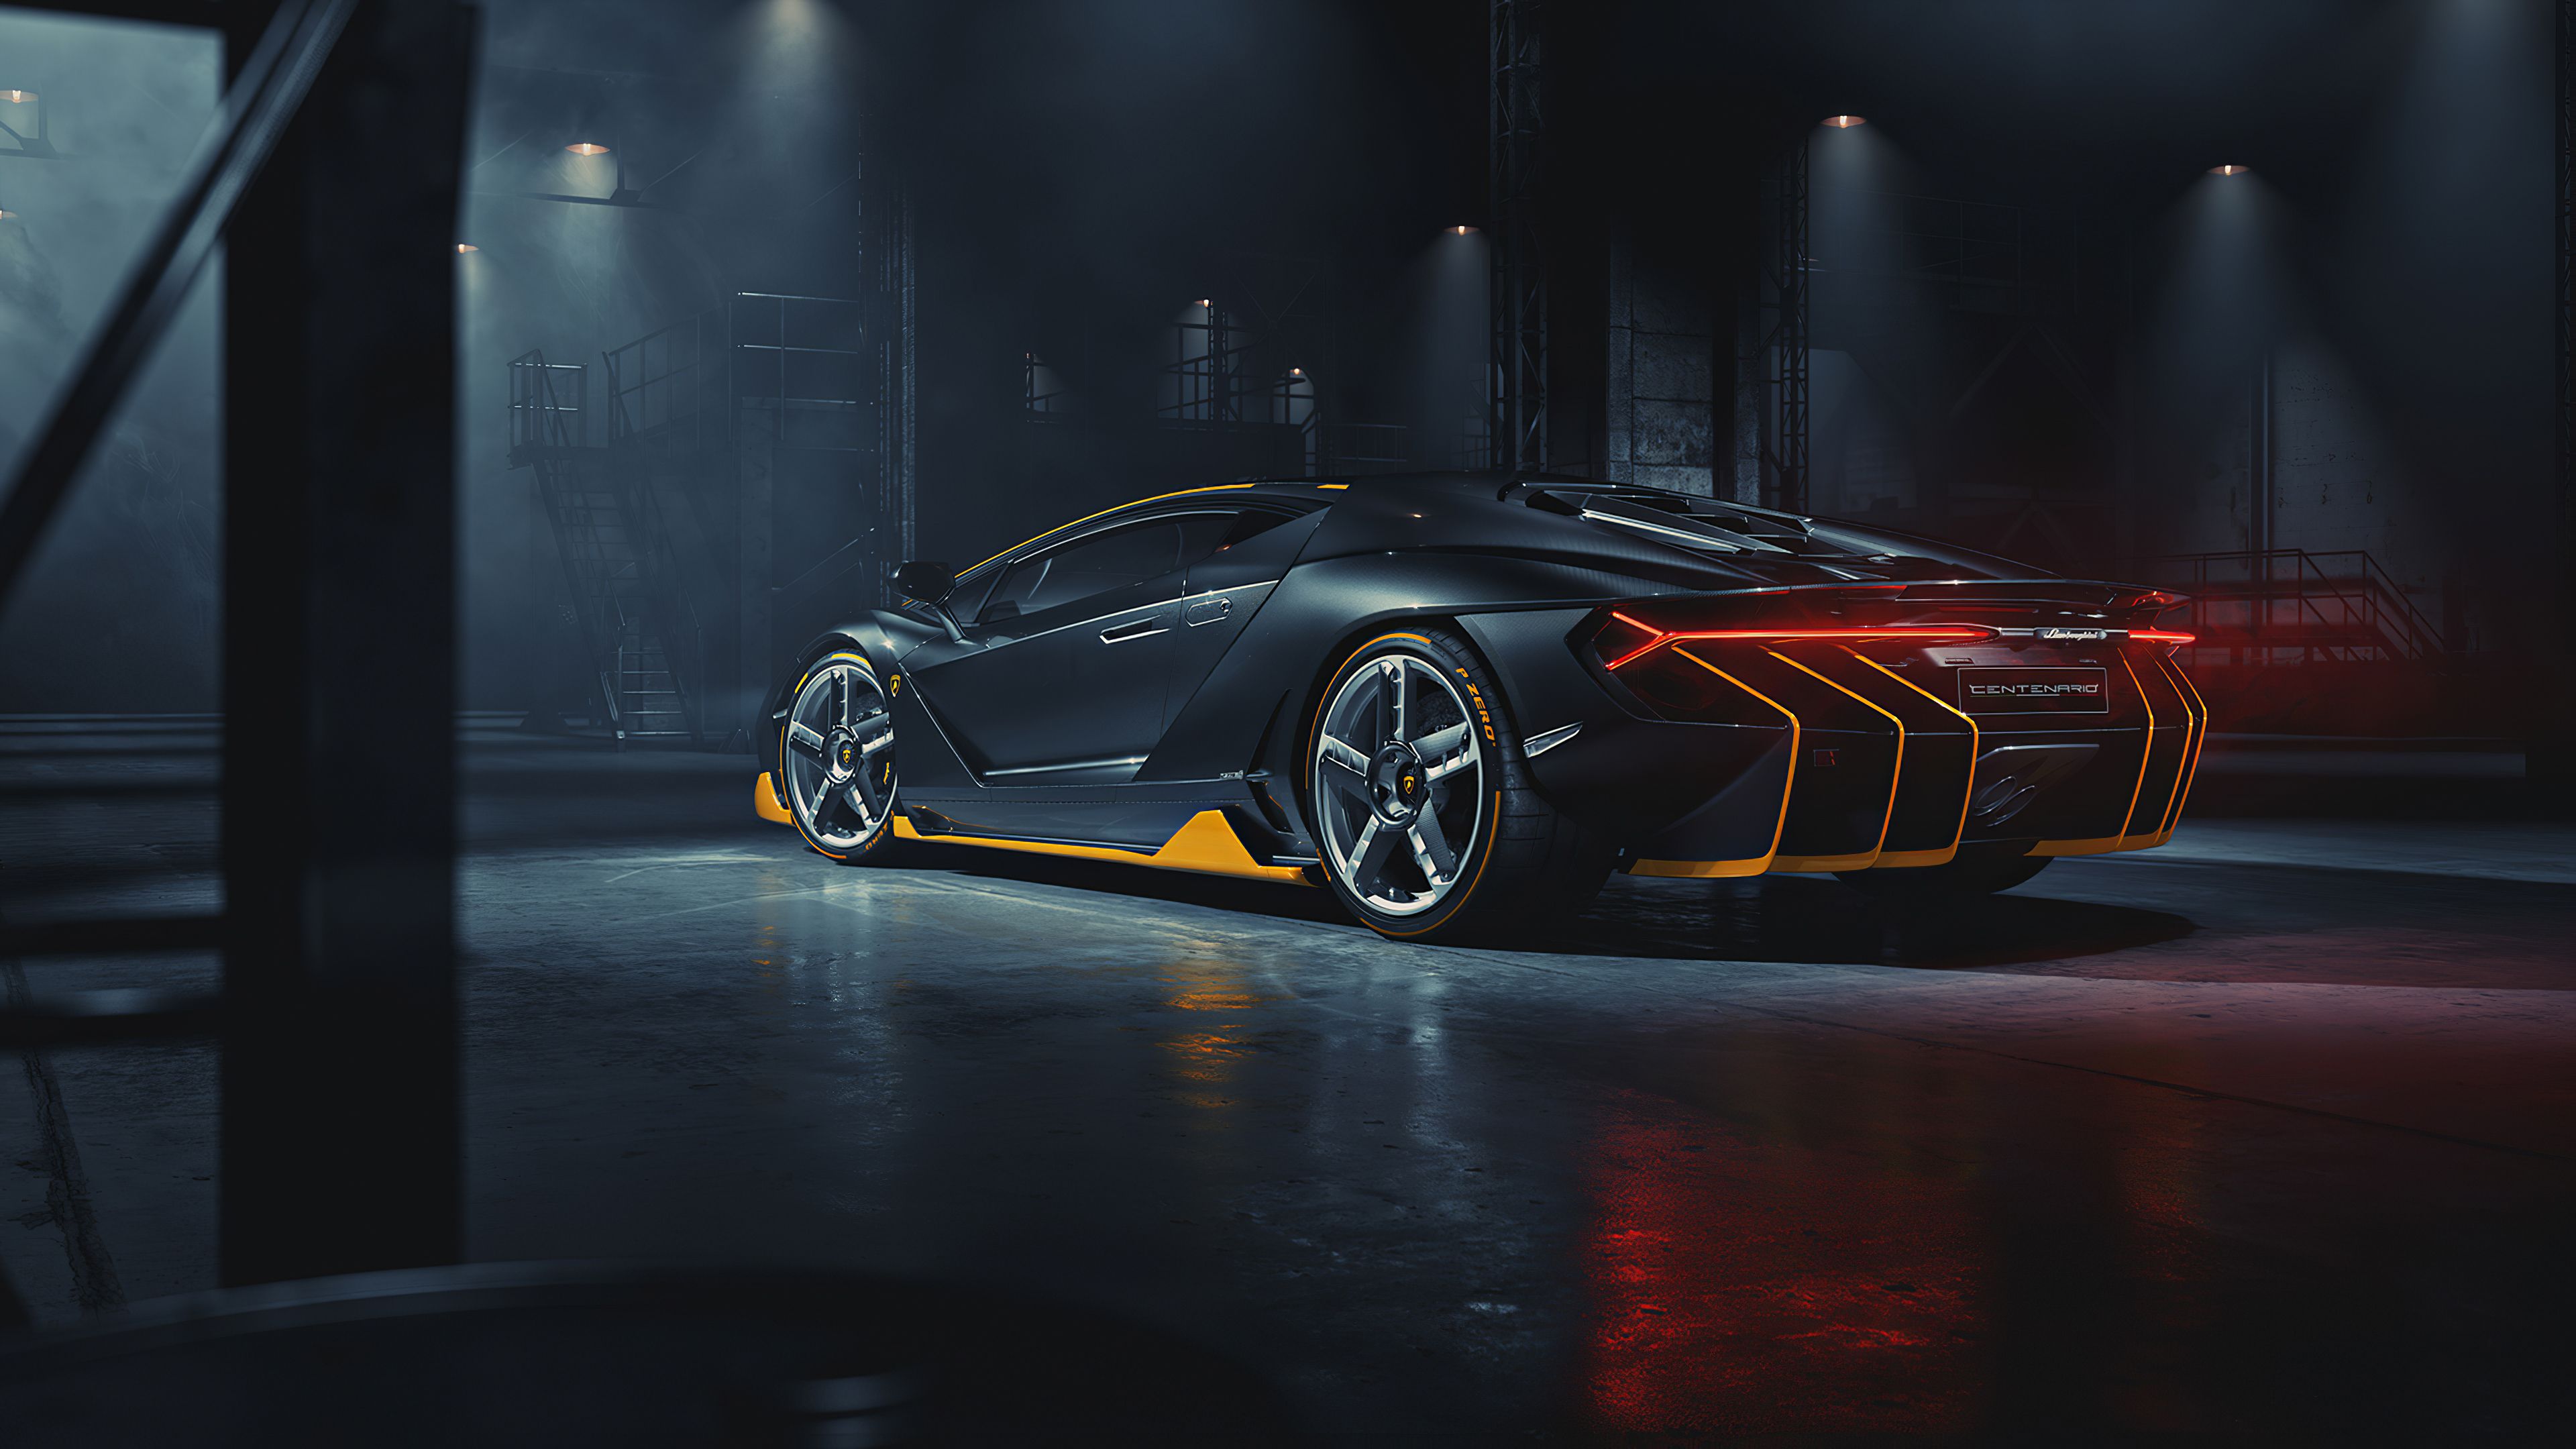 Lamborghini Centenario Rear HD Cars, 4k Wallpaper, Image, Background, Photo and Picture